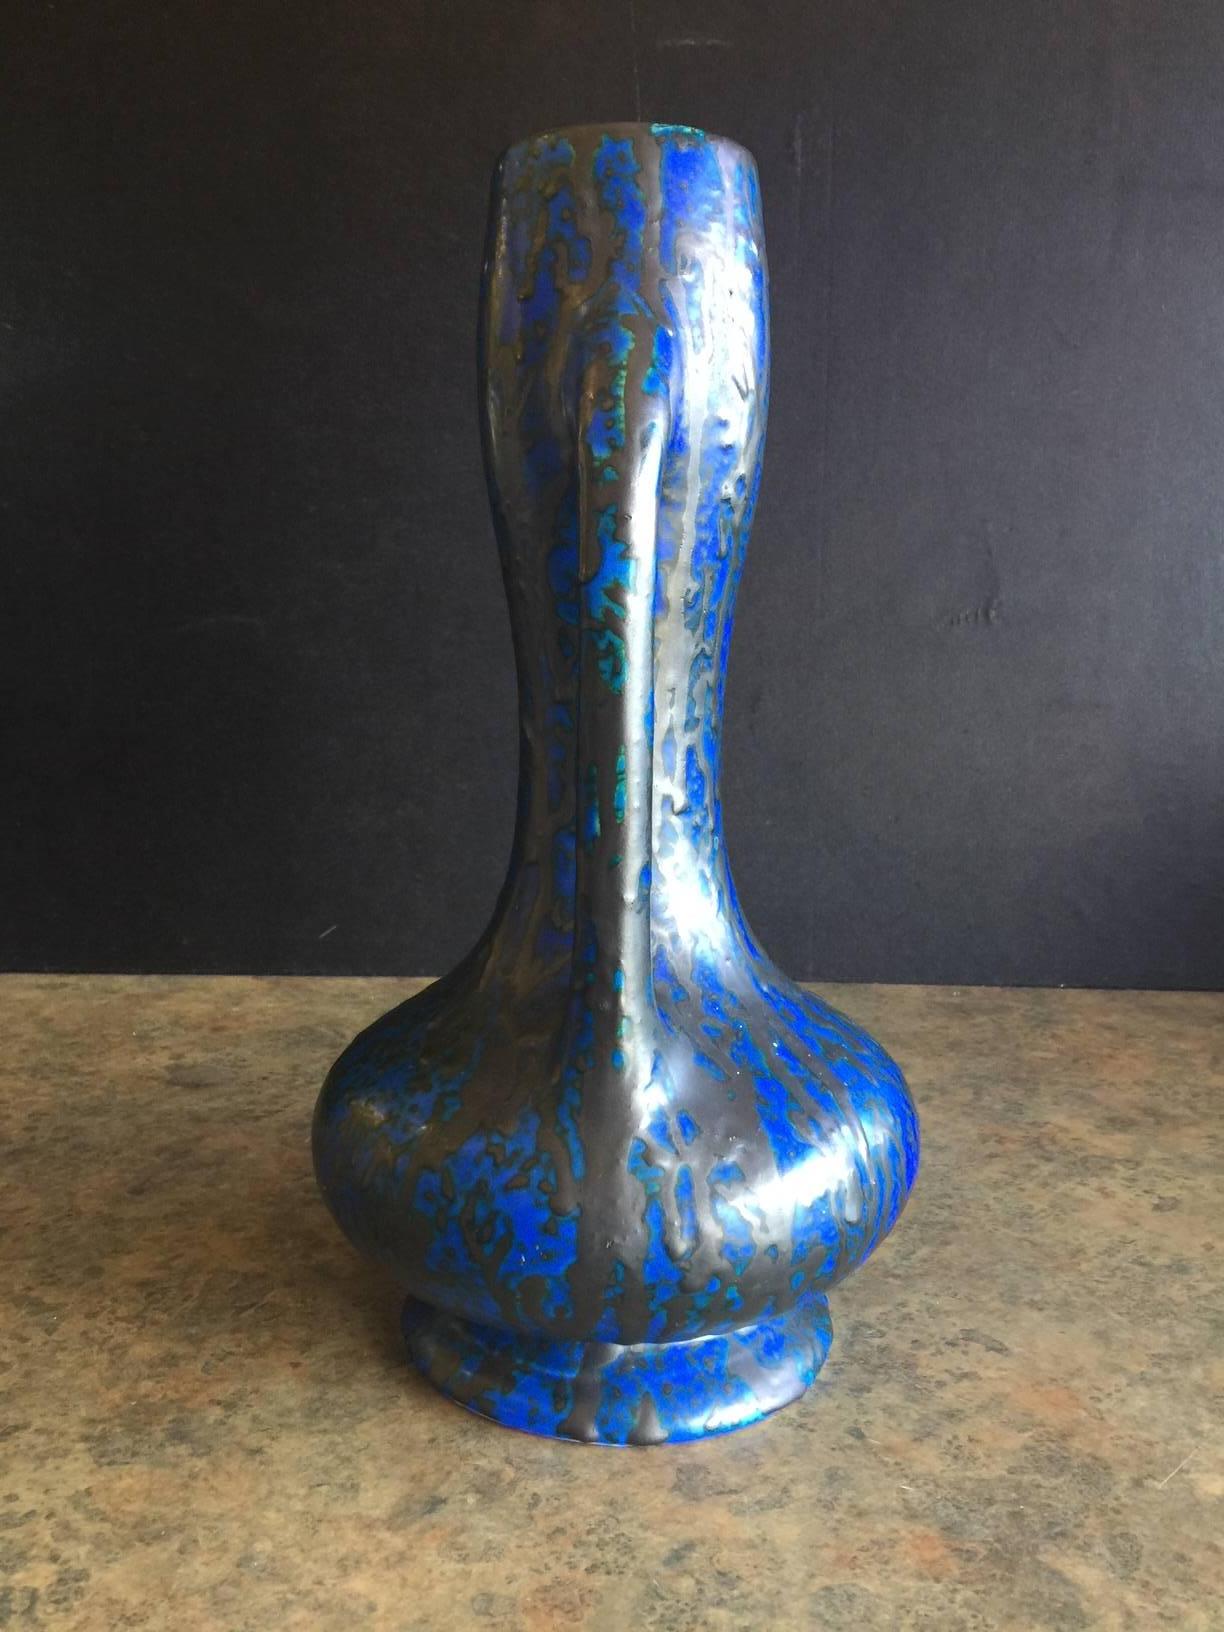 Stunning midcentury dual handled lava glazed vase by Ceramique de Bruxelles of Belgium, circa 1960s.